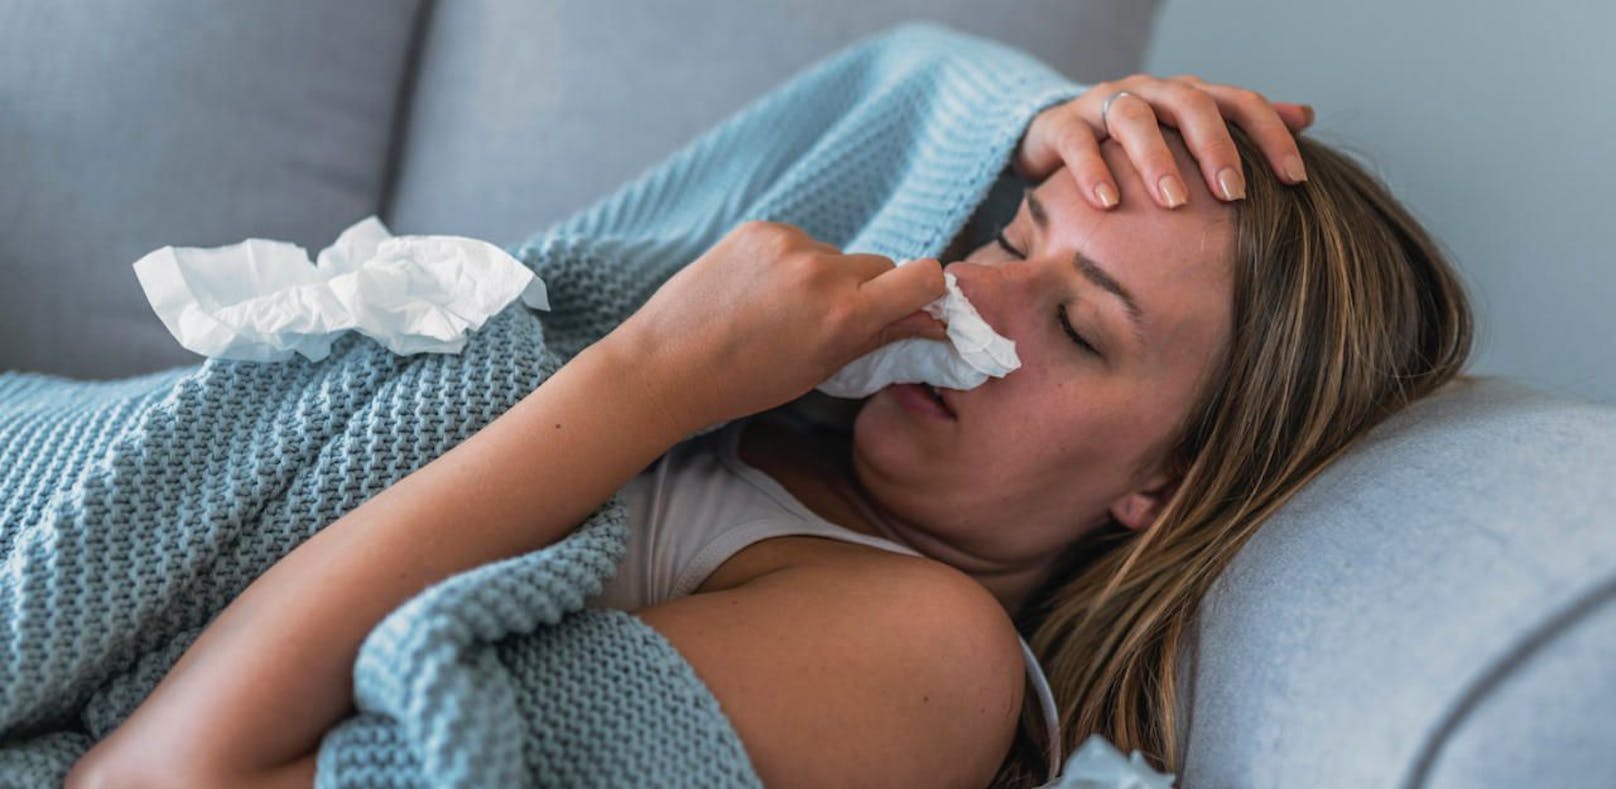 Das Gesundheitsministerium bestätigt: Die Grippewelle ist offiziell in Österreich ausgebrochen